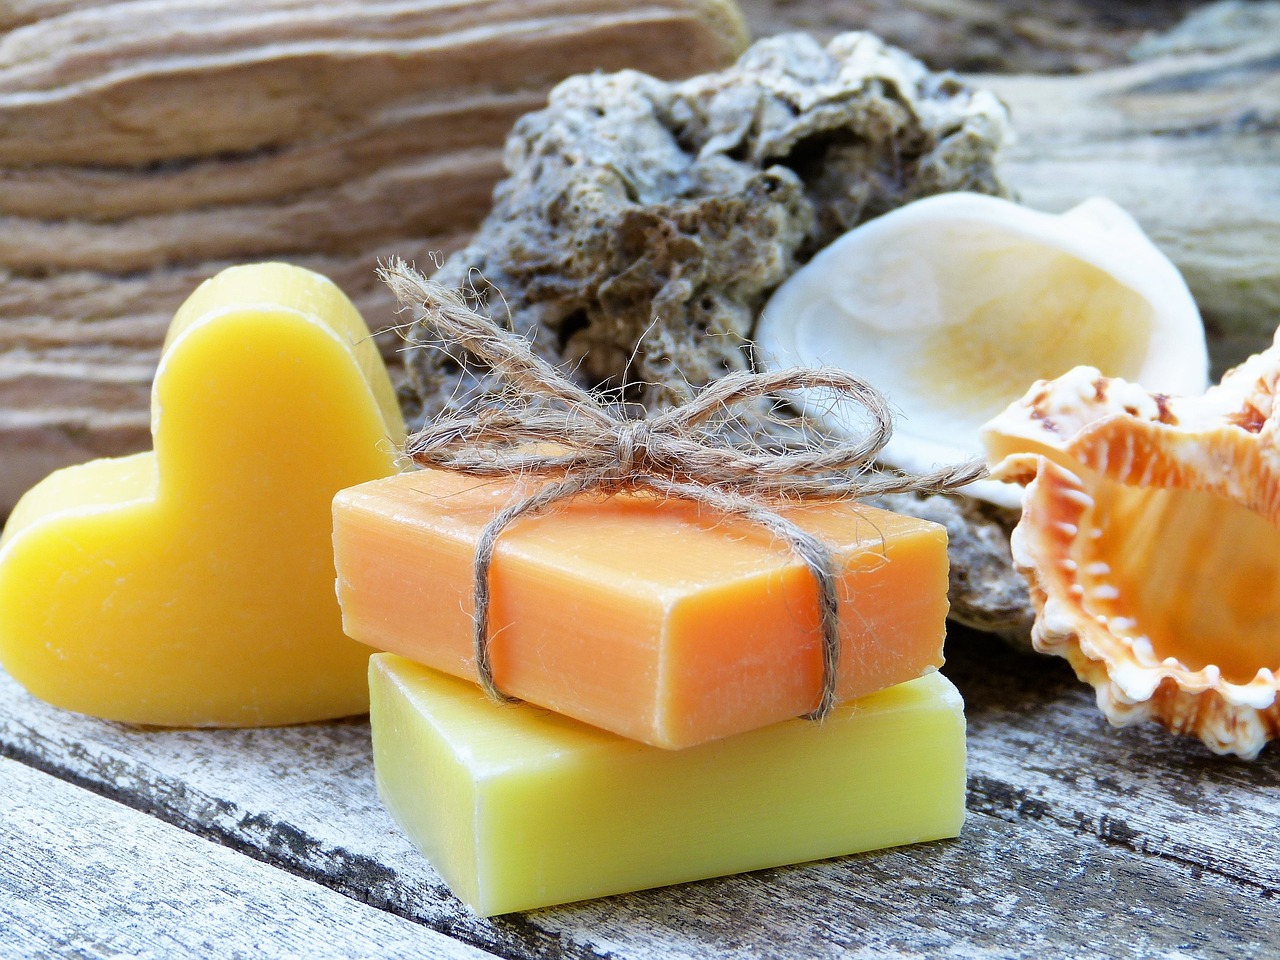 Как сварить мыло из обмылков, жира или мыльной основы: 4 подробные инструкции